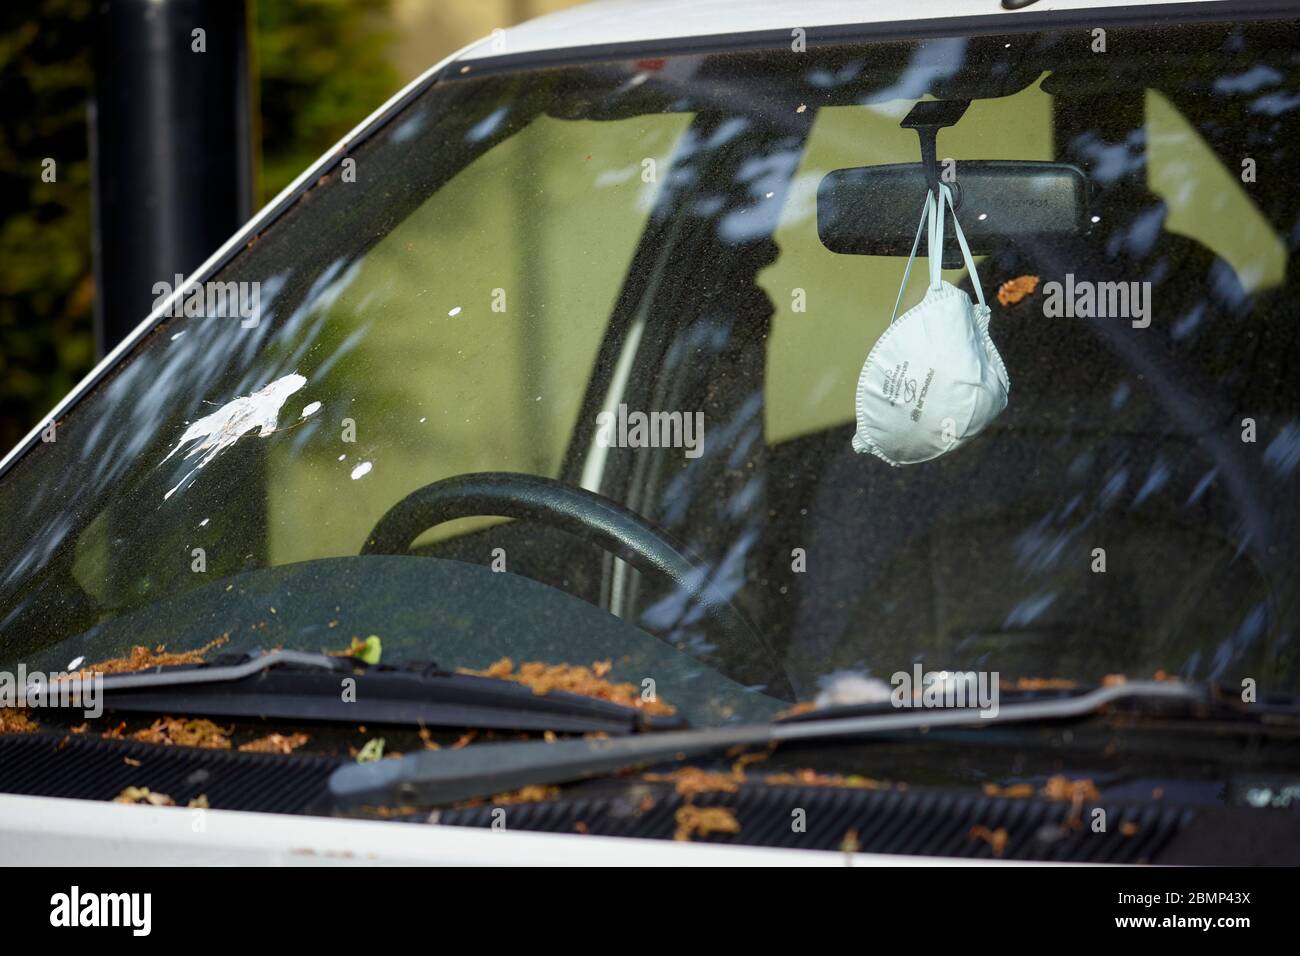 Die Facemask hängt einen Rückspiegel im geparkten Auto während des Covid-19 Ausbruchs, Frühjahr 2020, London Stockfoto